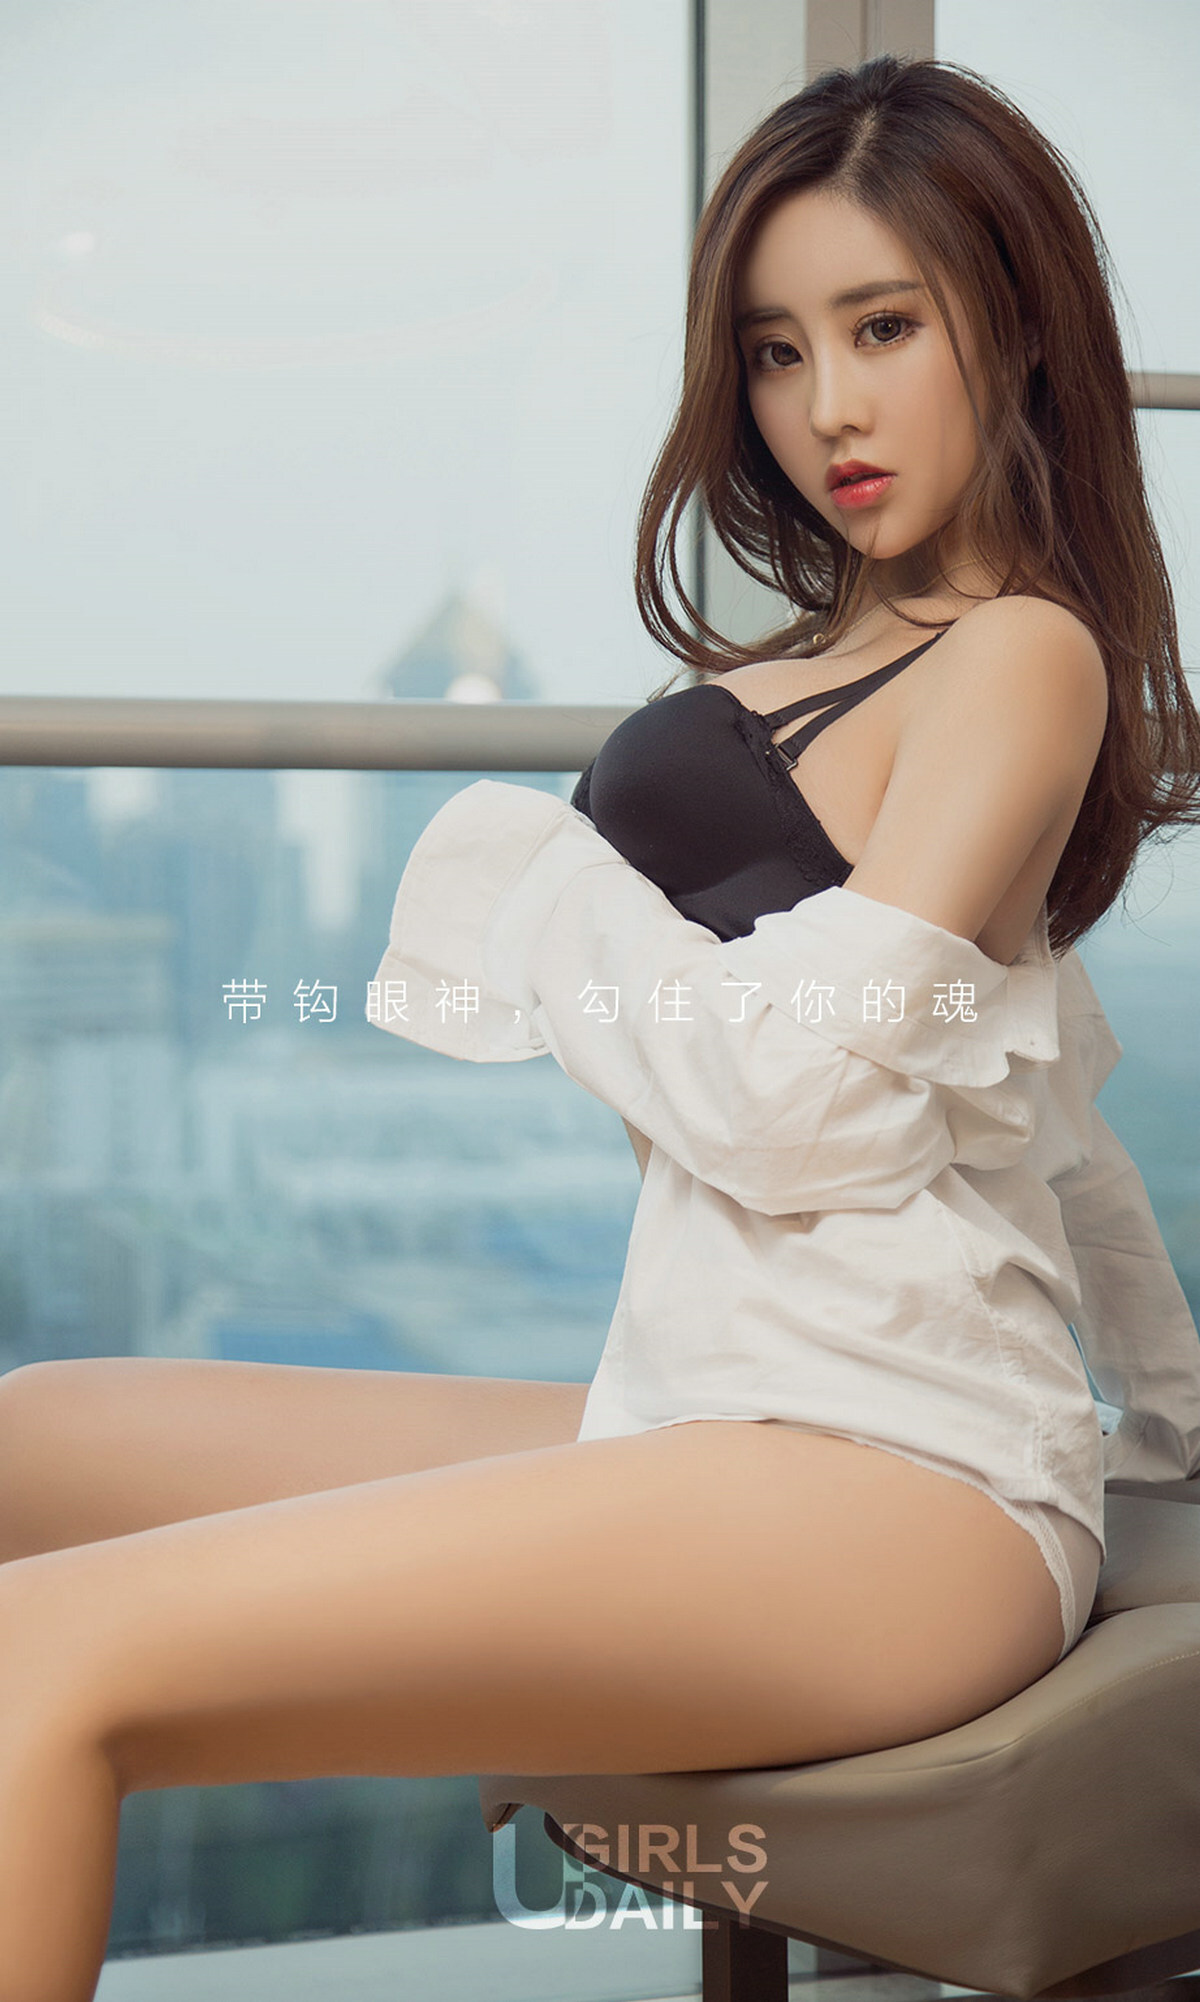 [aiyouwu] 2018app no.1136 Chen Meixi a cool white shirt